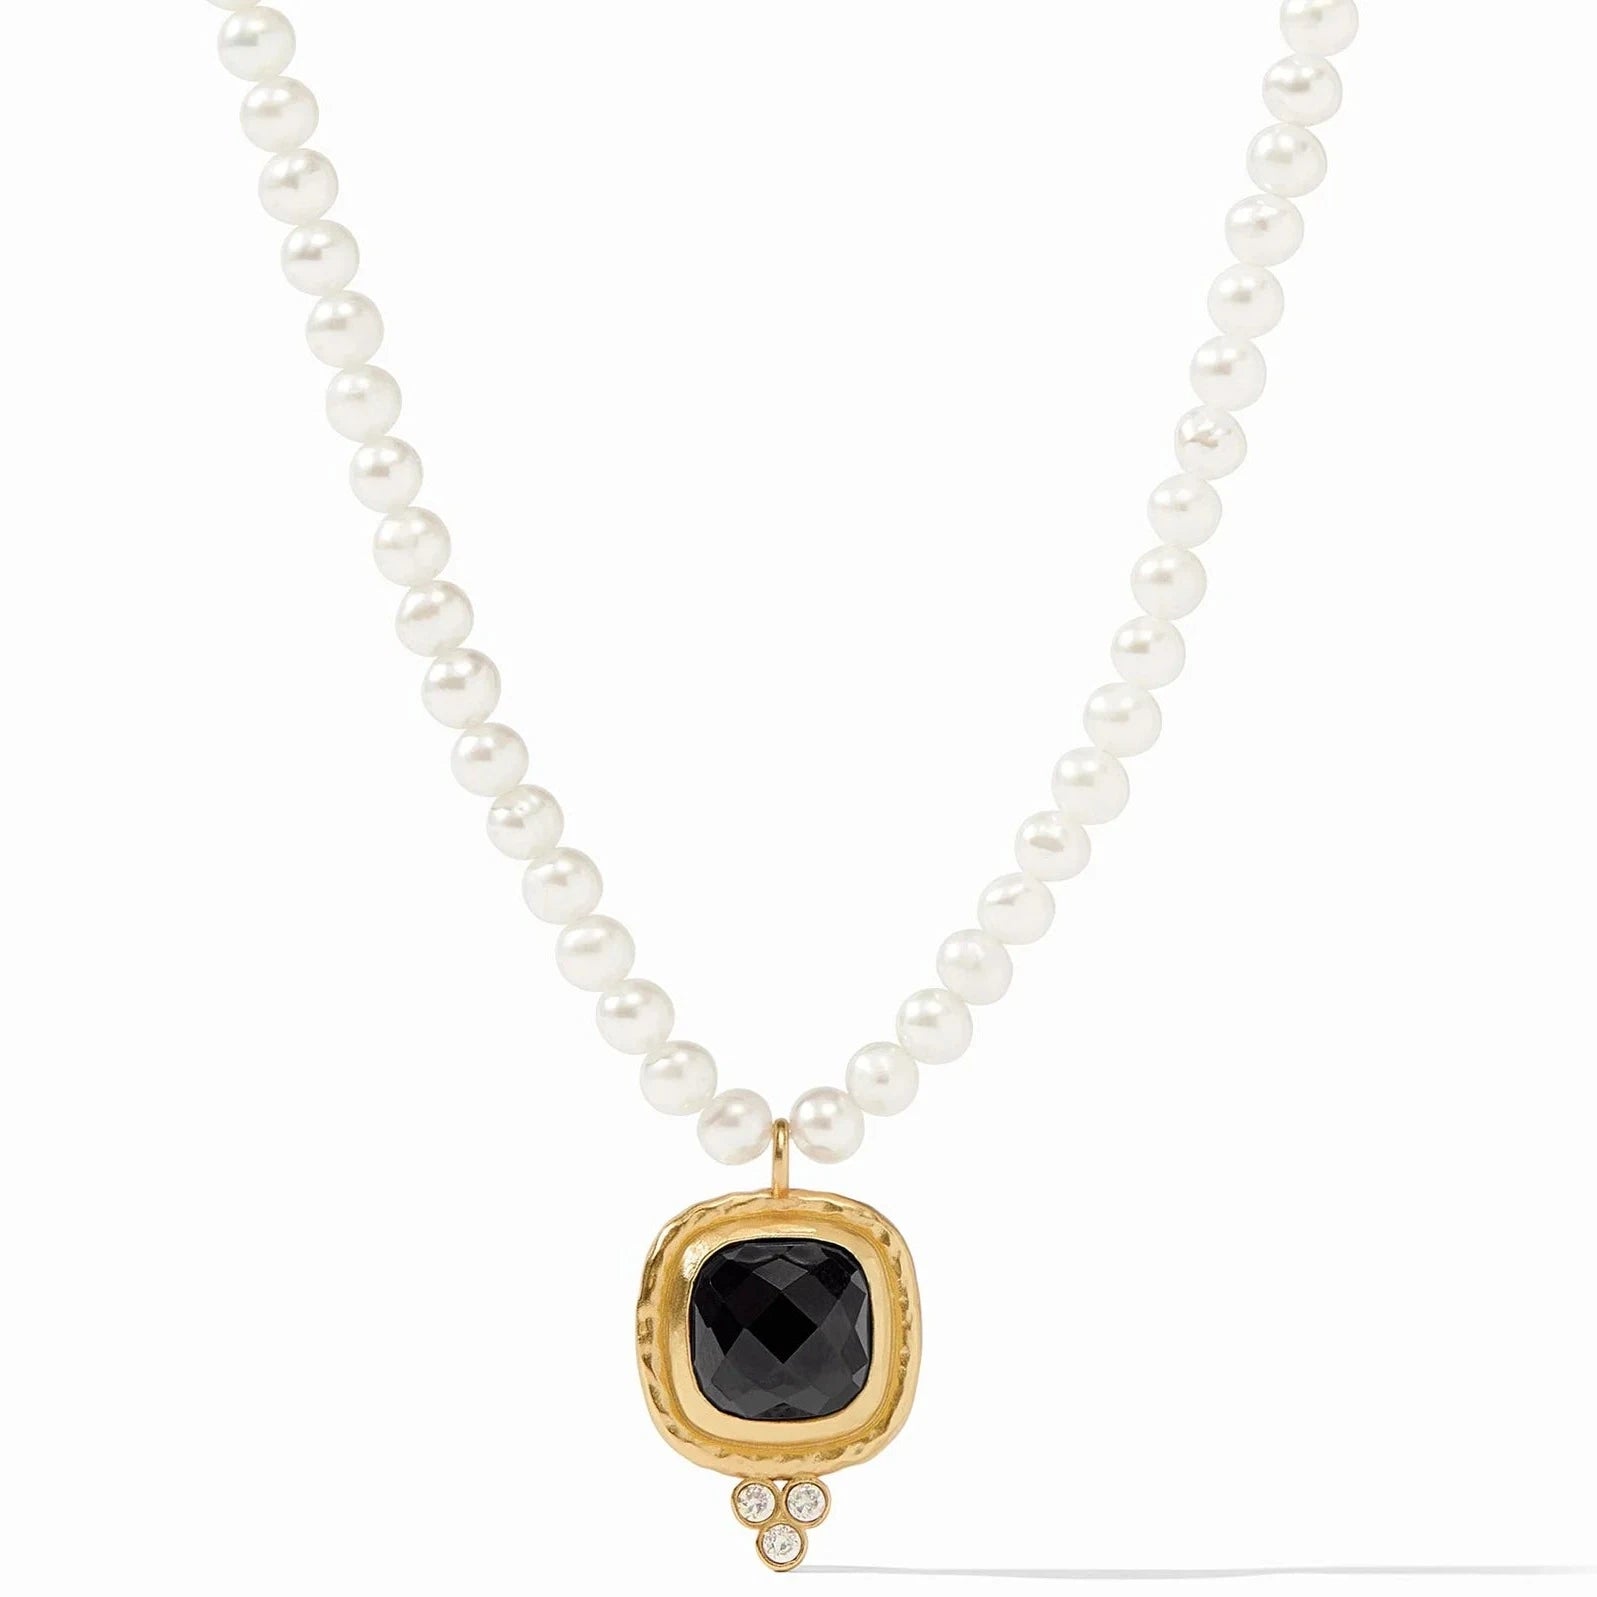 Julie Vos Tudor Delicate Necklace, Pearls & Obsidian Black